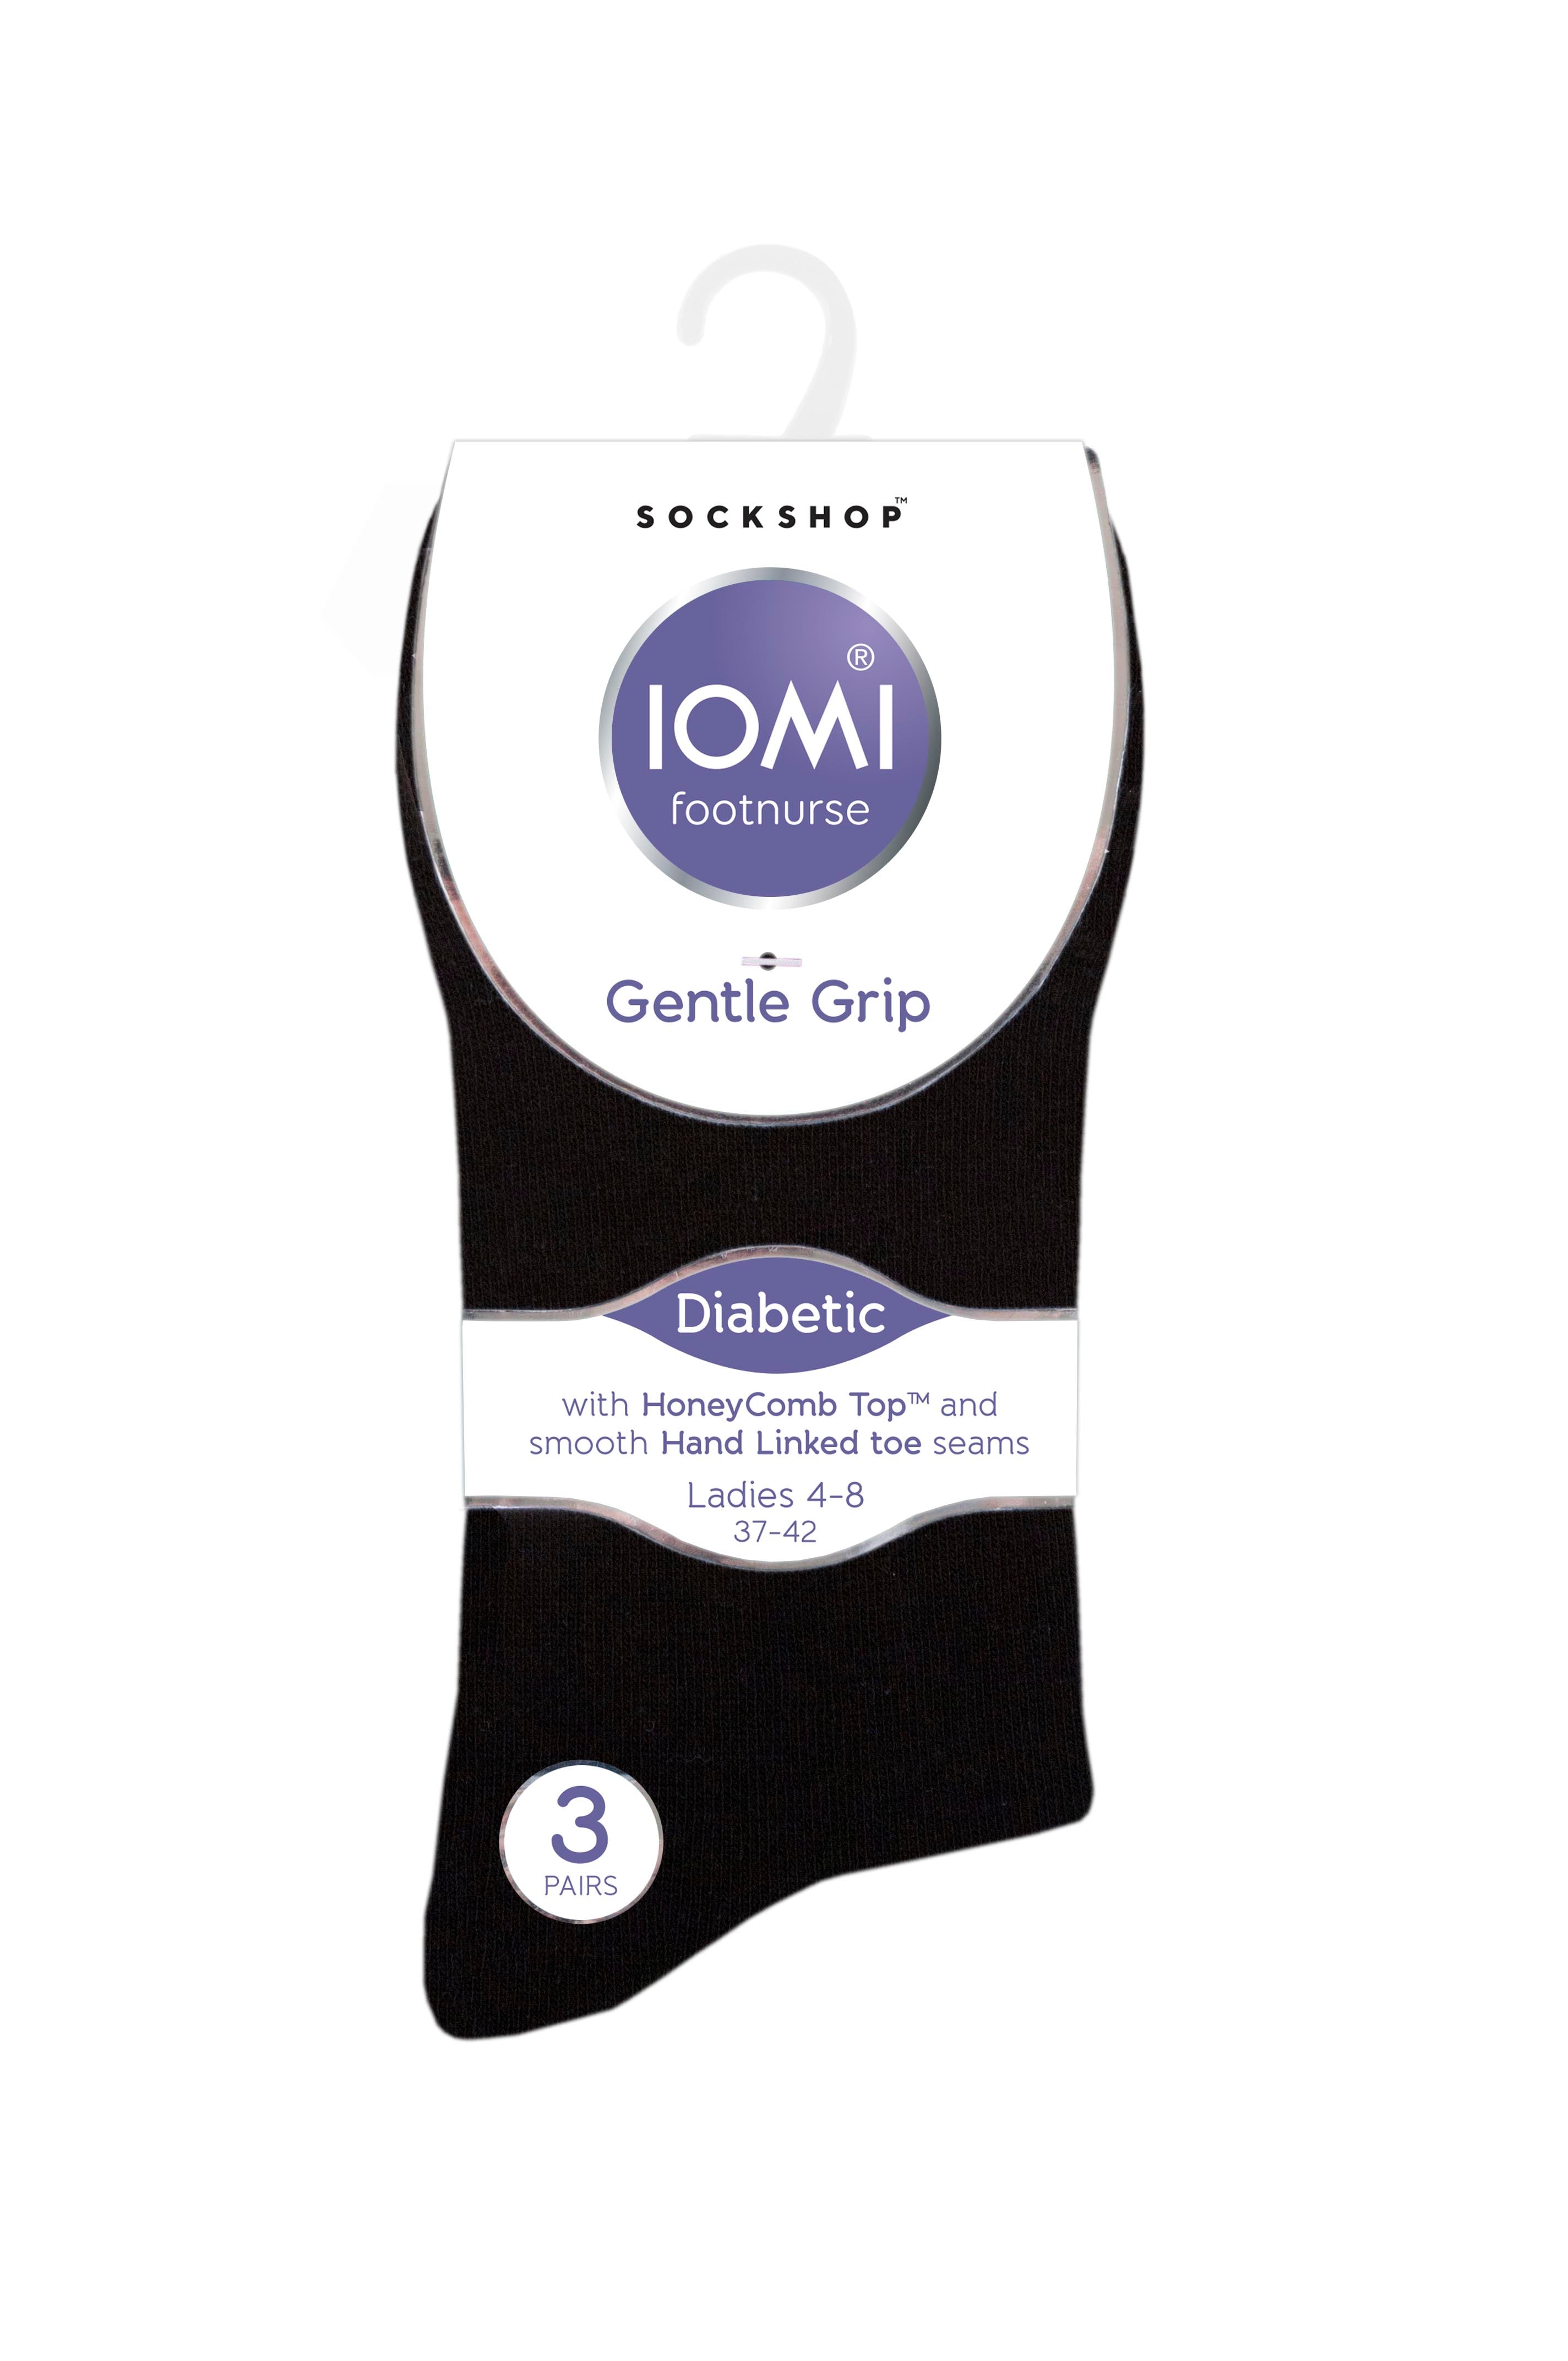 6 Pairs Ladies IOMI FootNurse Gentle Grip Diabetic Socks - Black